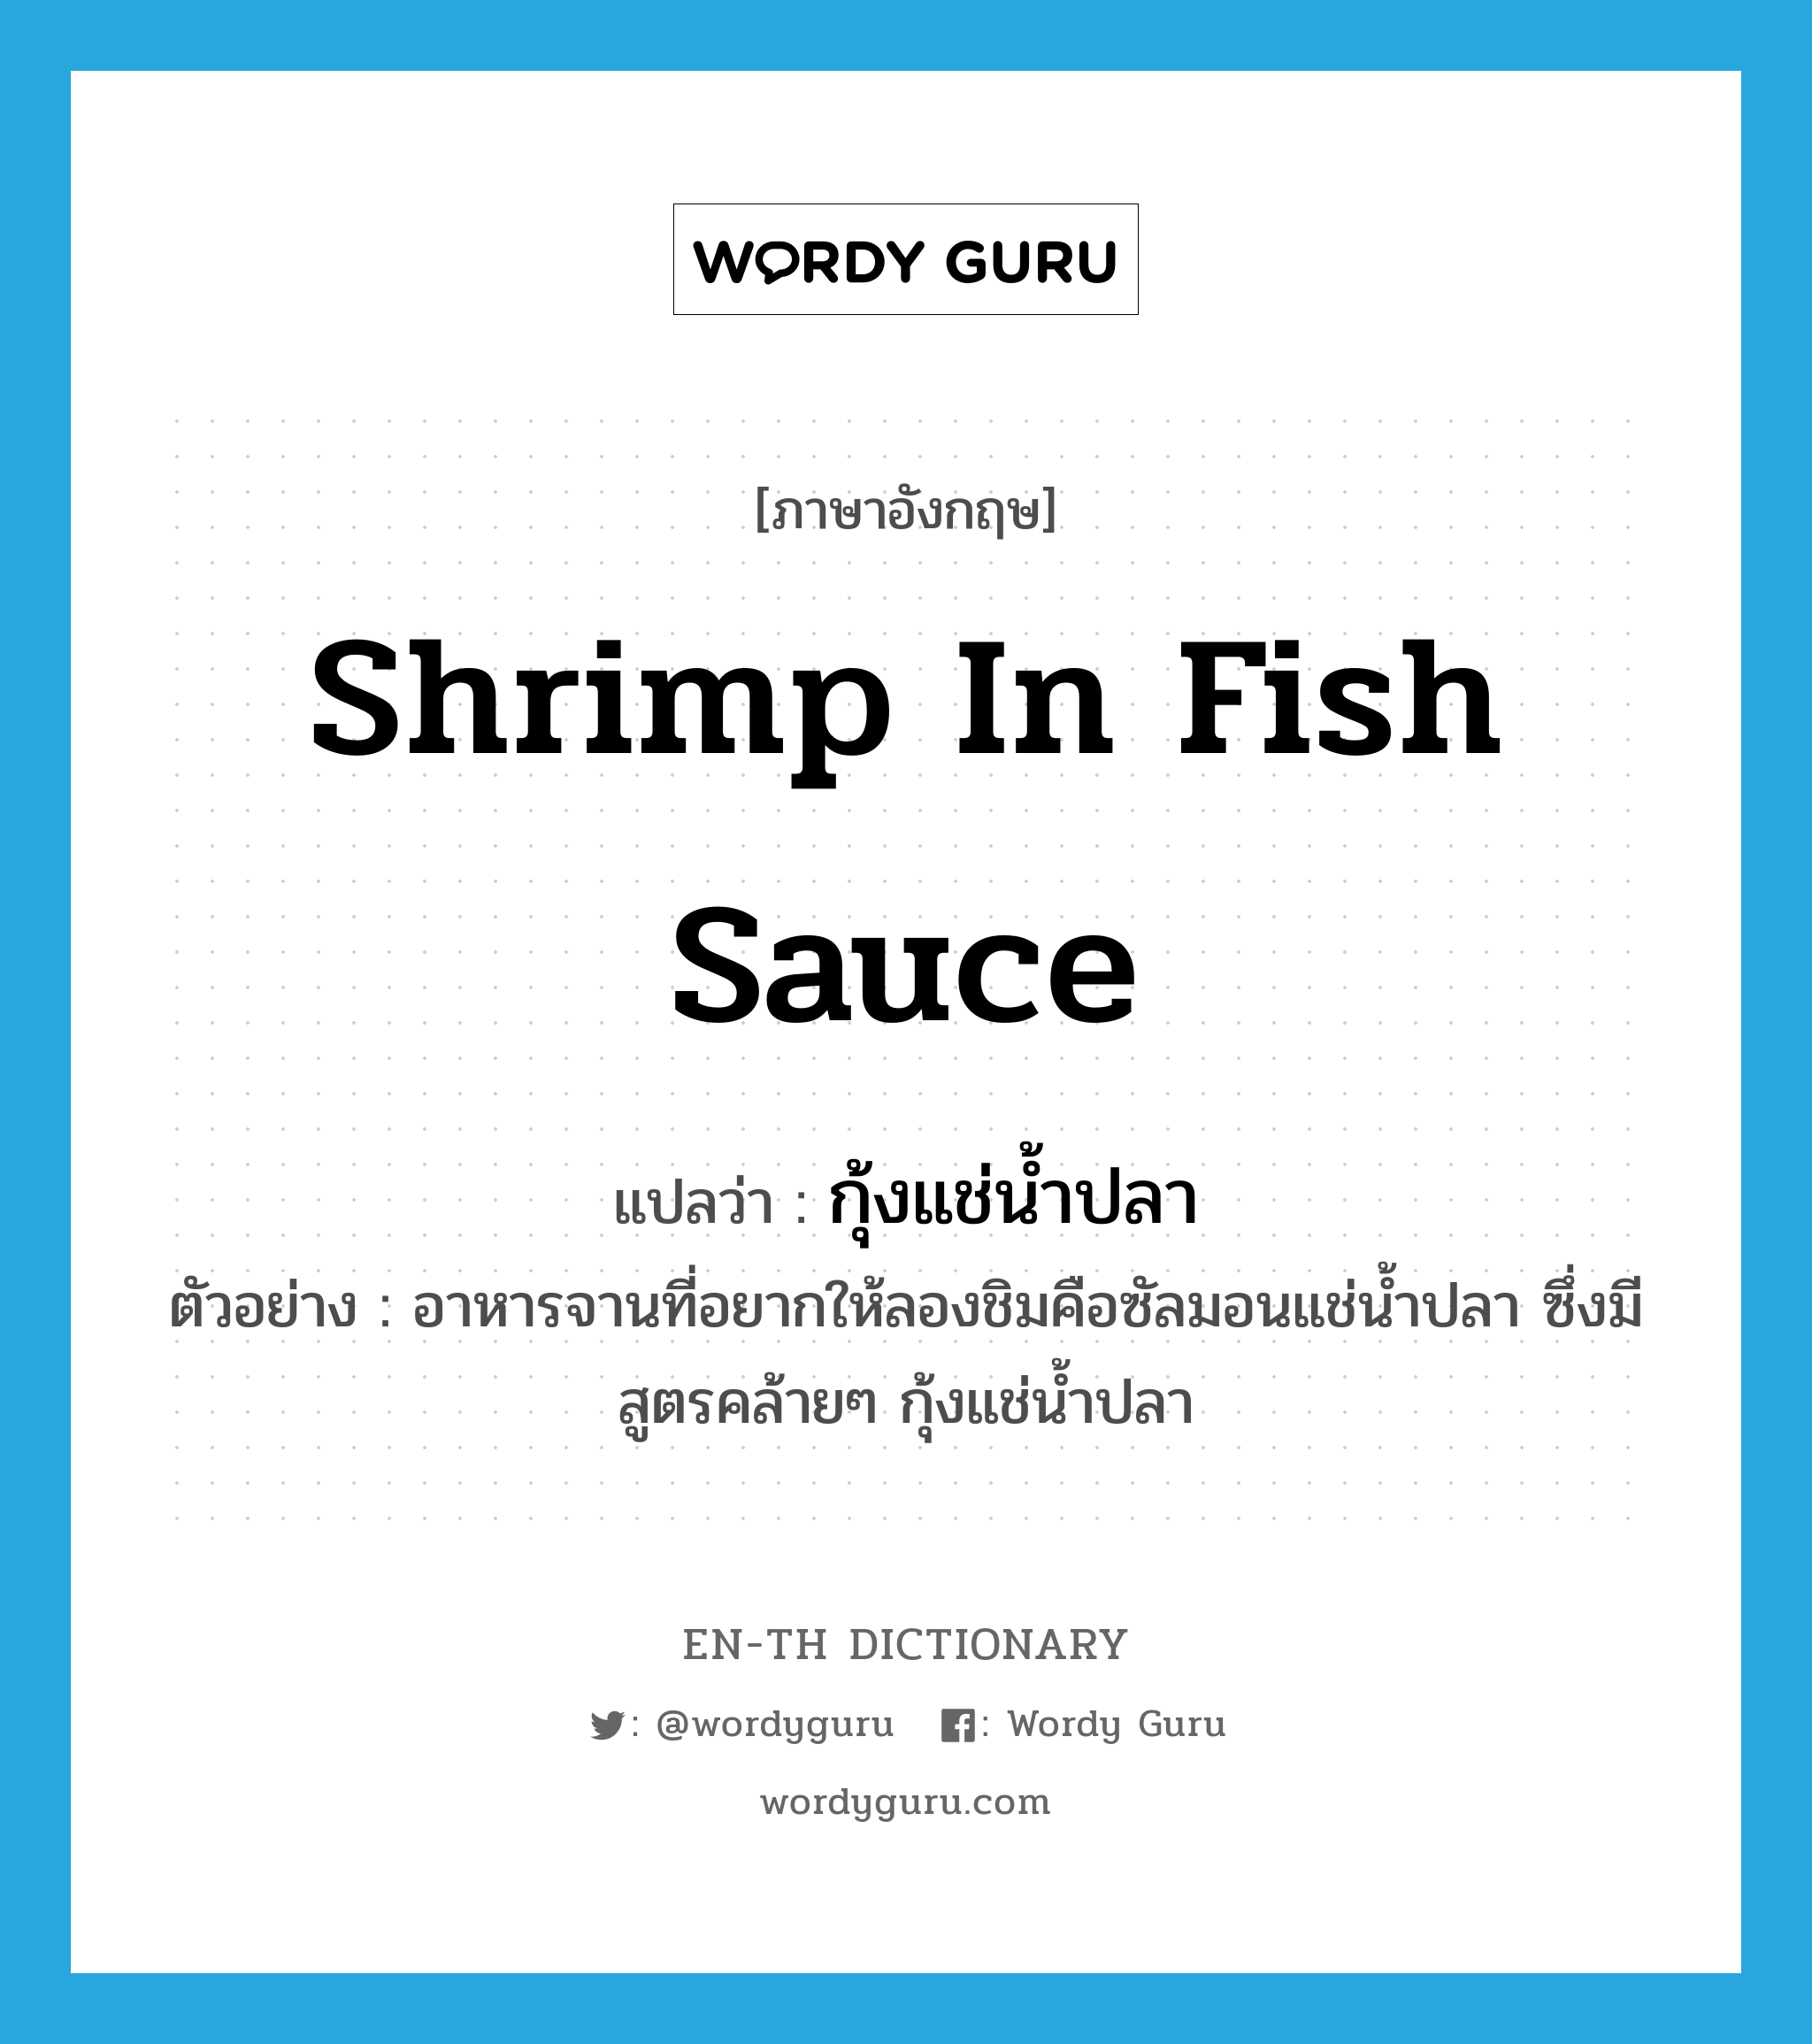 shrimp in fish sauce แปลว่า?, คำศัพท์ภาษาอังกฤษ shrimp in fish sauce แปลว่า กุ้งแช่น้ำปลา ประเภท N ตัวอย่าง อาหารจานที่อยากให้ลองชิมคือซัลมอนแช่น้ำปลา ซึ่งมีสูตรคล้ายๆ กุ้งแช่น้ำปลา หมวด N